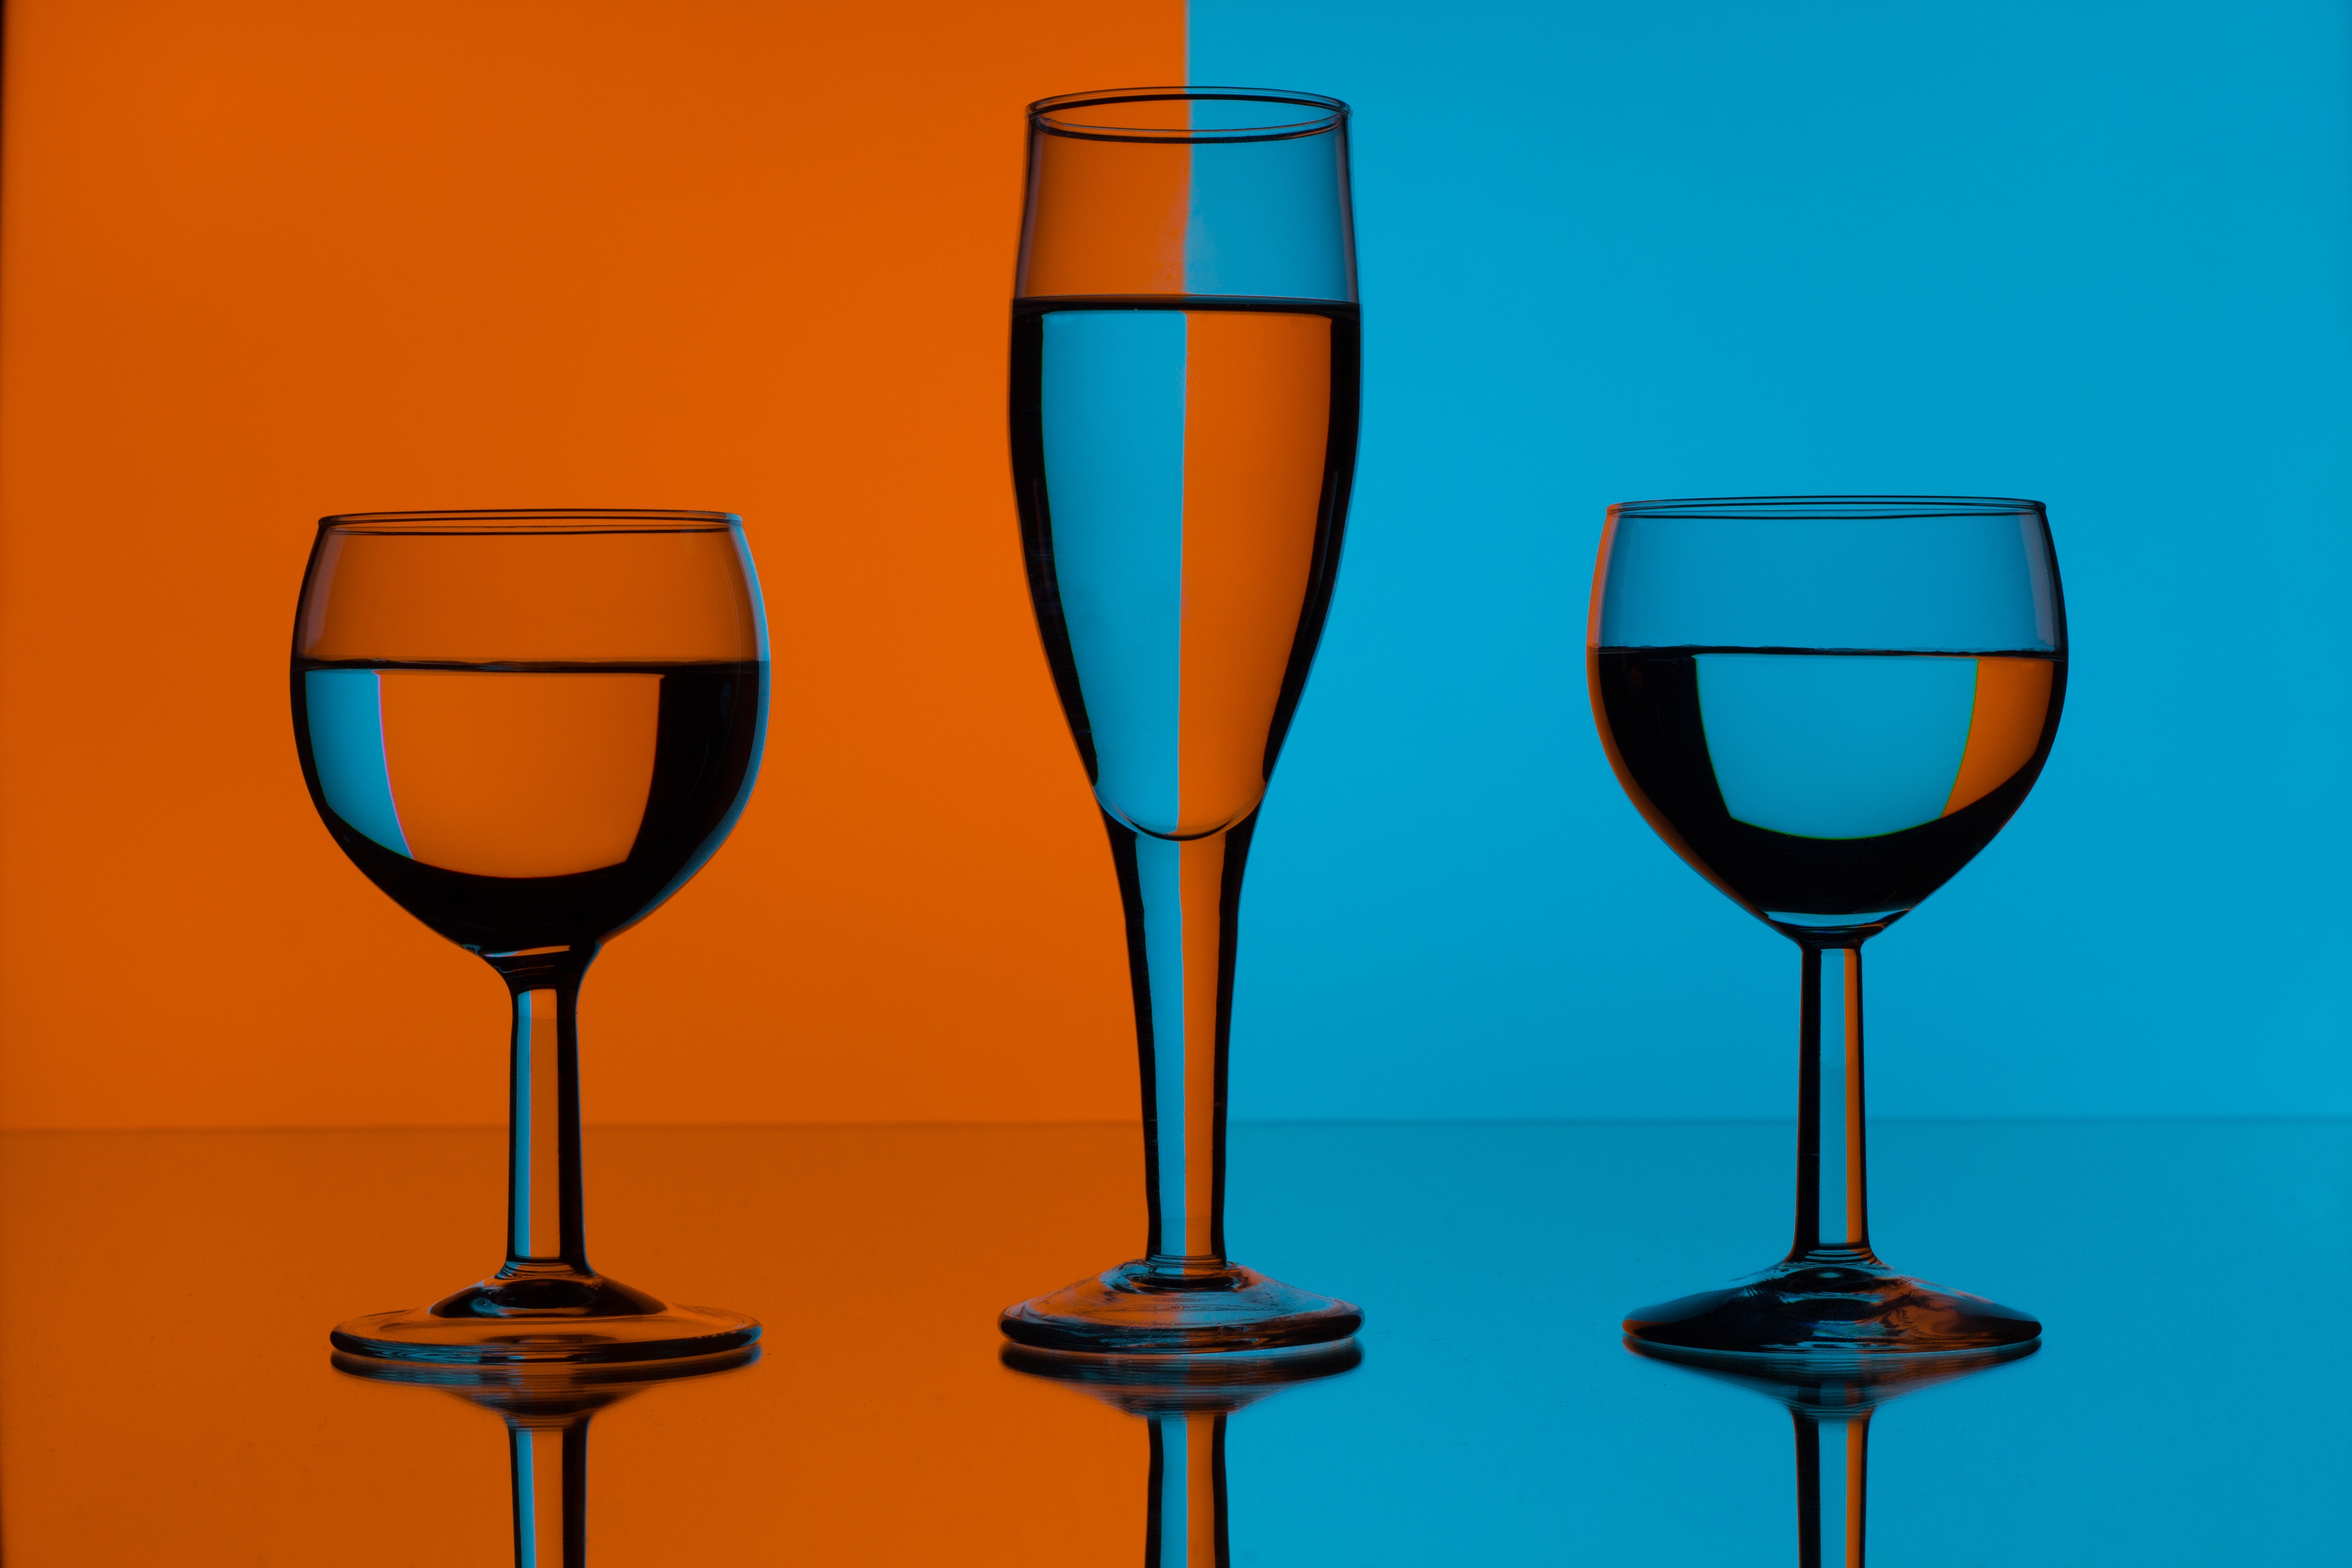 Artistic Orange and Blue Wine Glasses by Dewald Van Rensburg